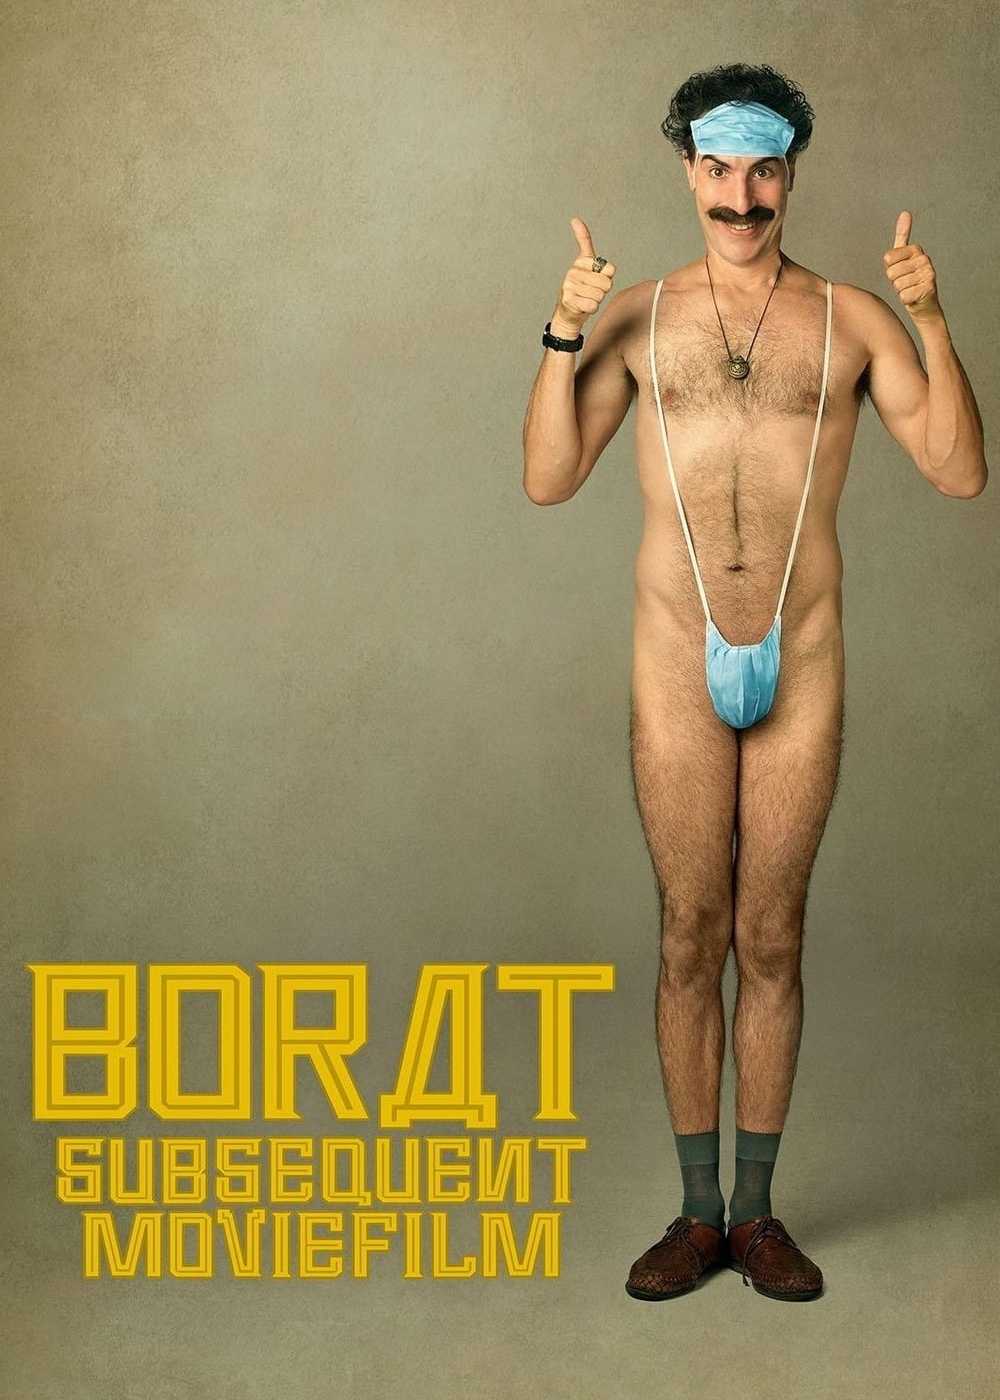 Borat subsequent moviefilm - Borat subsequent moviefilm